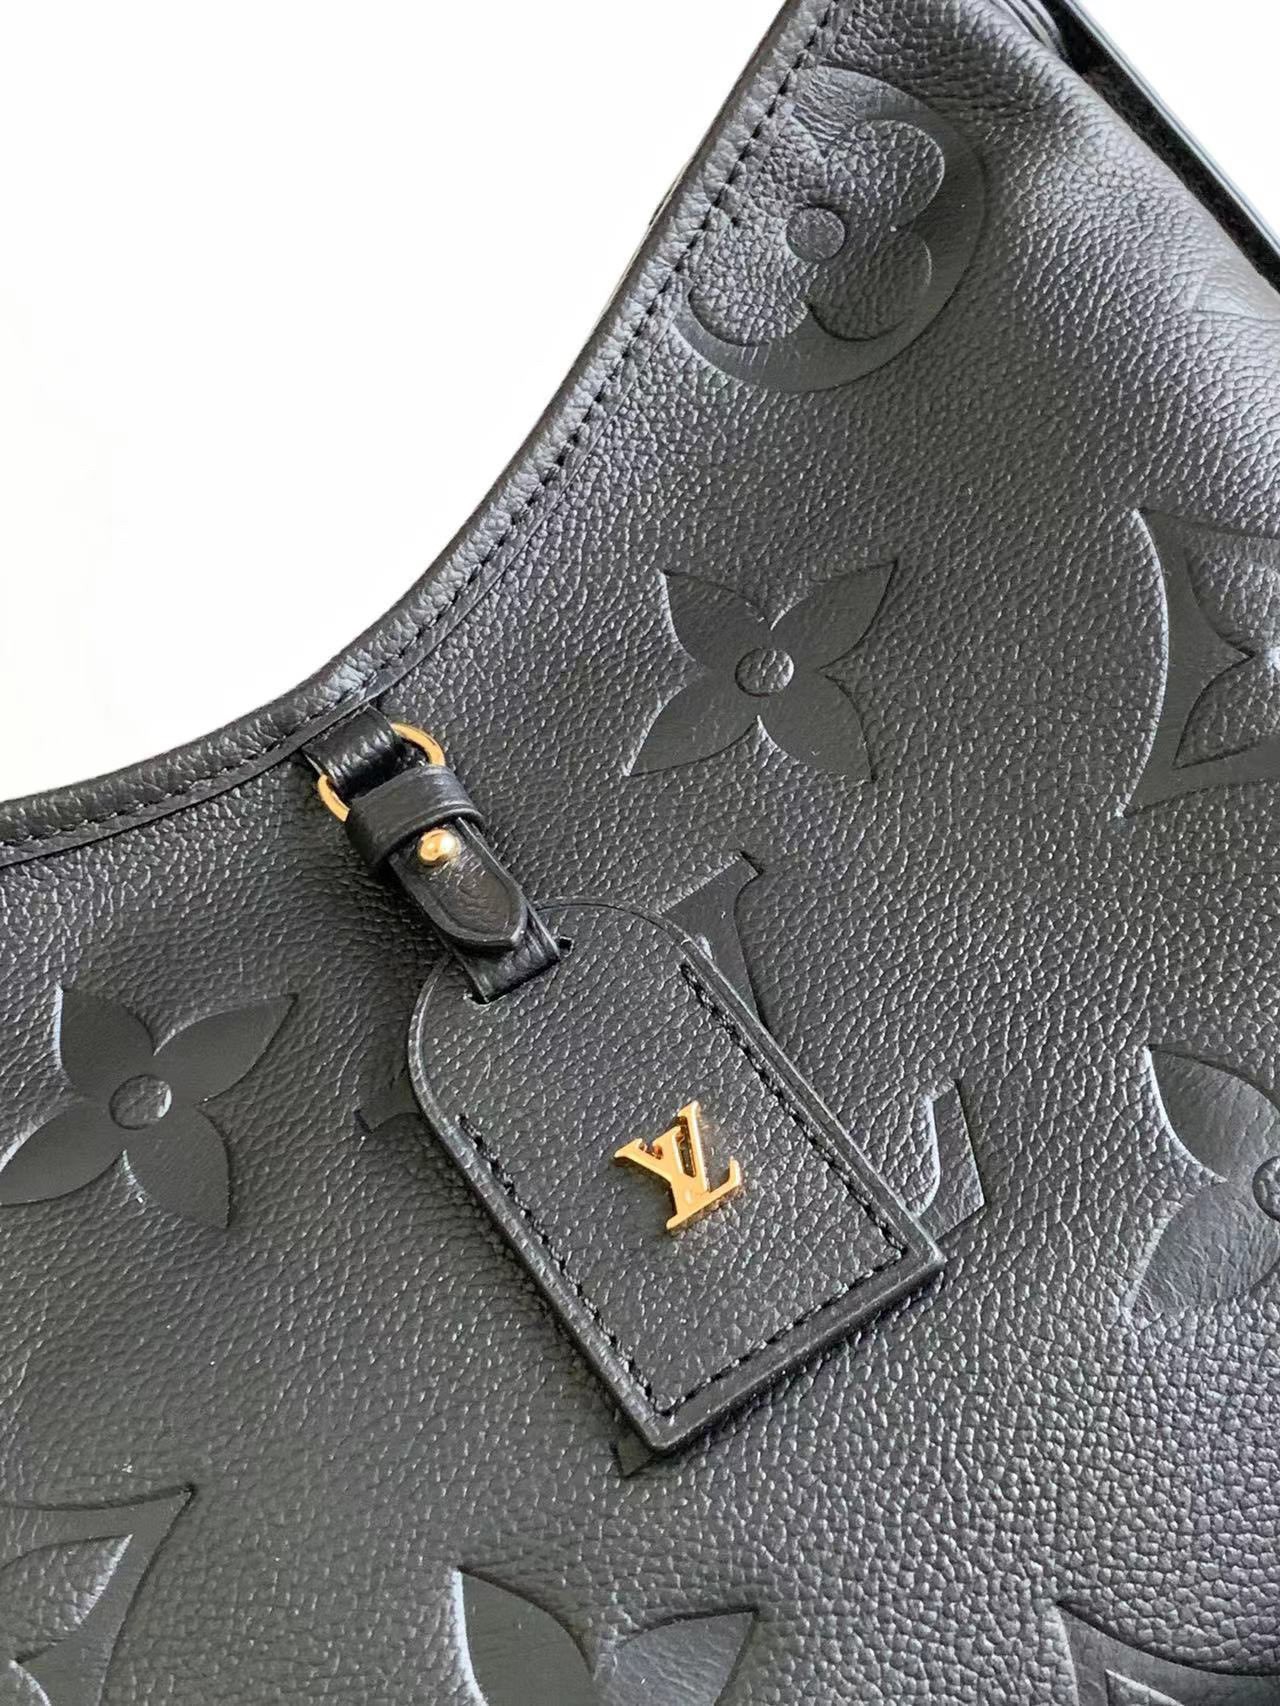 Unboxing Louis Vuitton CARRYALL PM Black Monogram Empreinte. 